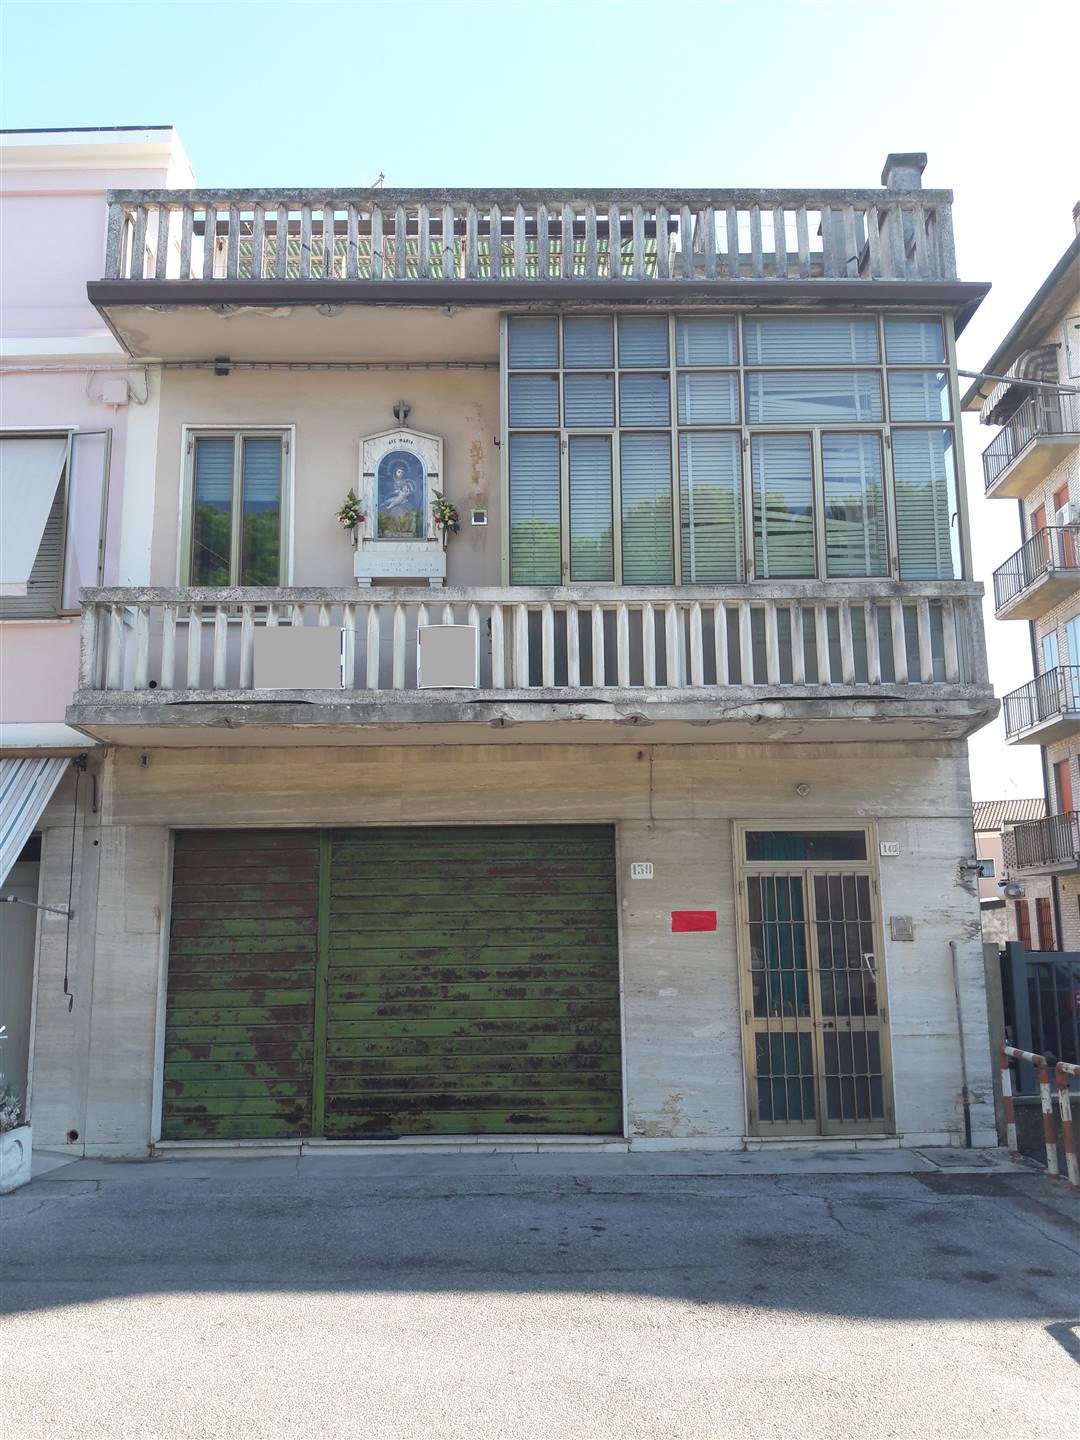 Rif. B397 ADRIA - Corso Garibaldi vendesi casa accostata di ampia metratura da ristrutturare disposta tra i piani terra primo e secondo, con 